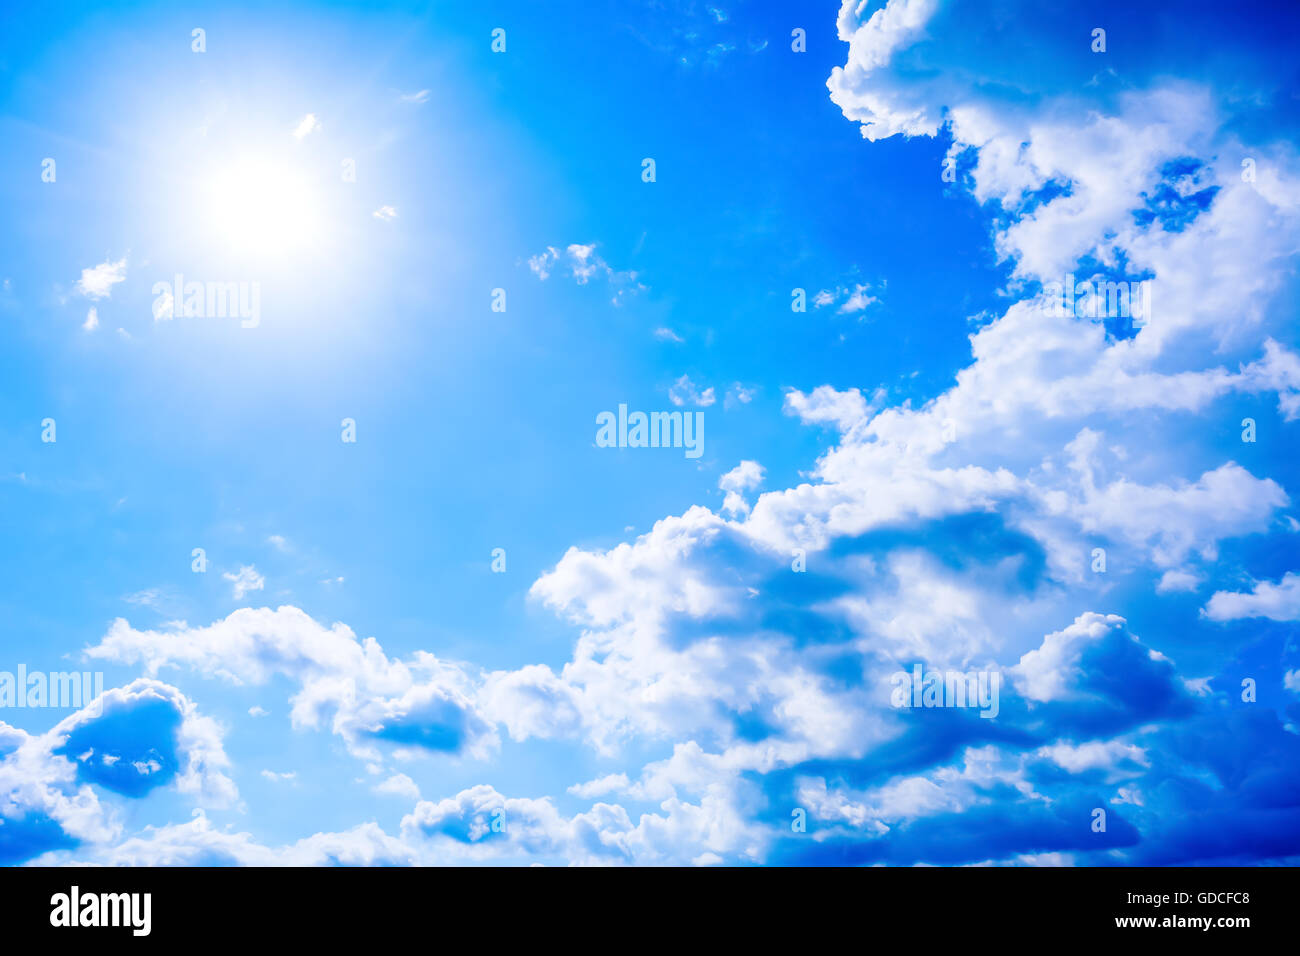 Ciel bleu du registre avec des nuages et rayons de soleil. Beau fond de ciel bleu nuageux Banque D'Images